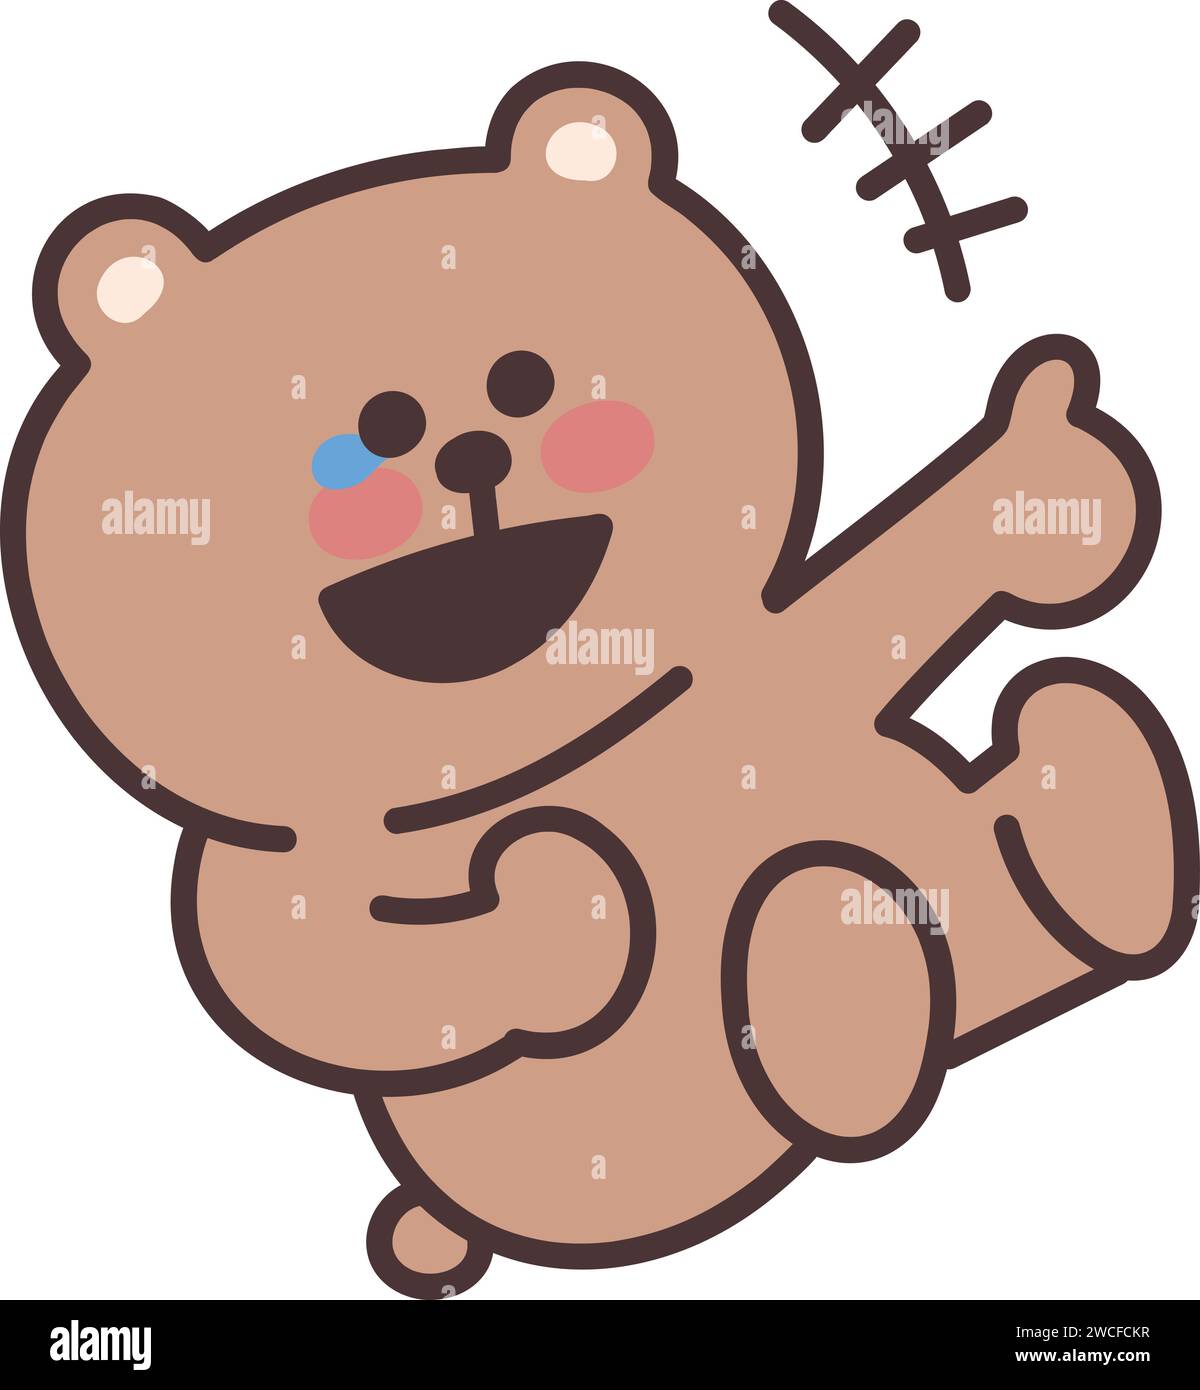 L'orso dei cartoni animati è esploso ridendo. Illustrazione vettoriale isolata su uno sfondo trasparente. Illustrazione Vettoriale